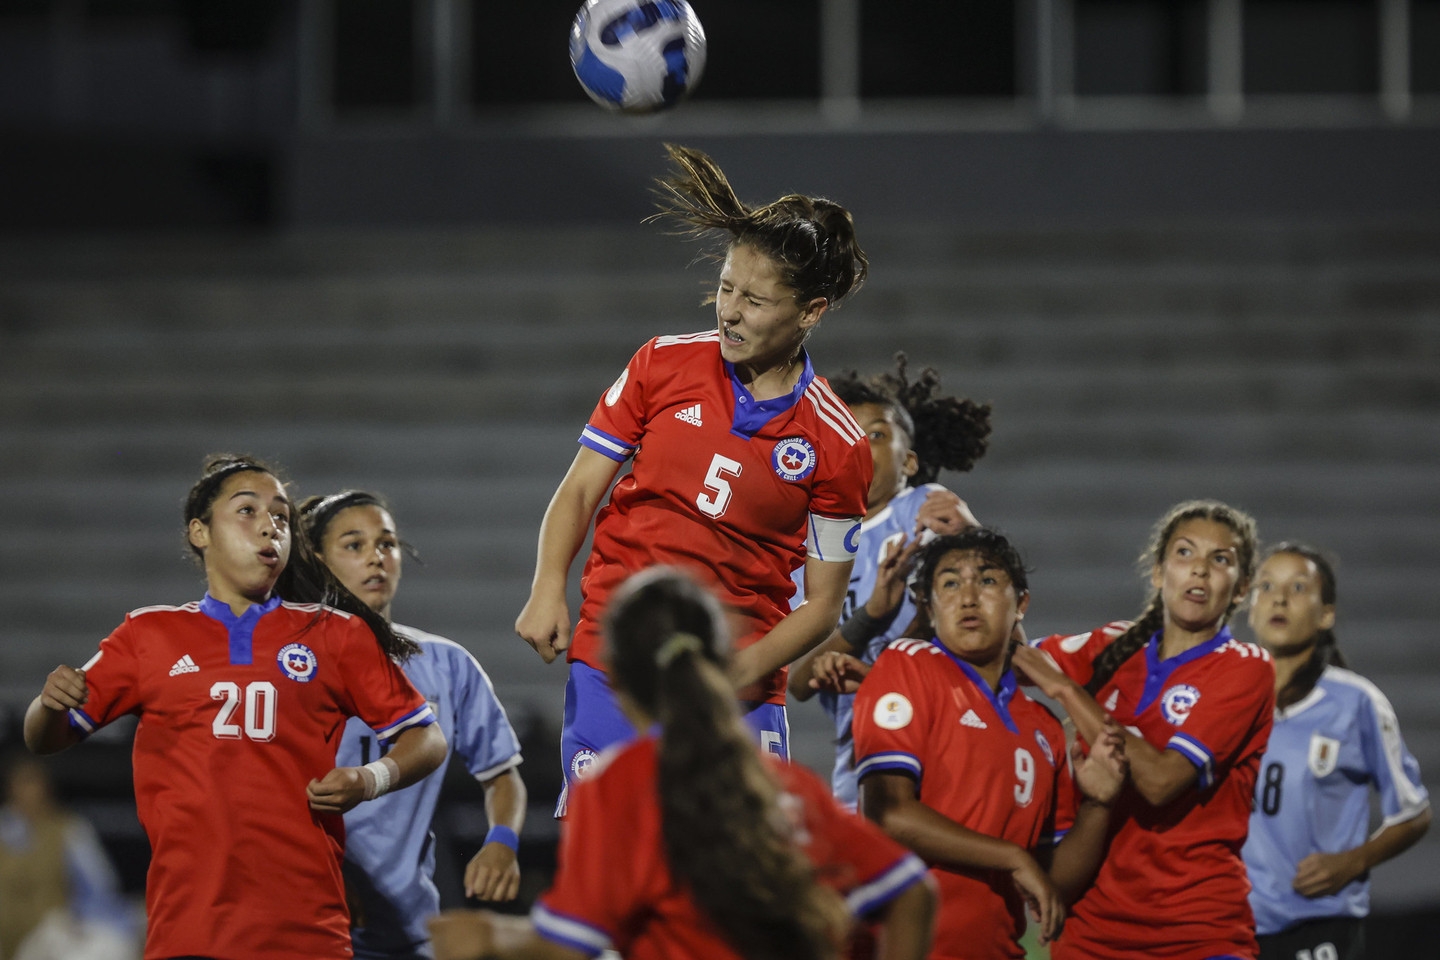 Qué debe ocurrir para que Uruguay clasifique al cuadrangular final en el  Sudamericano sub 17 femenino en el Charrúa?